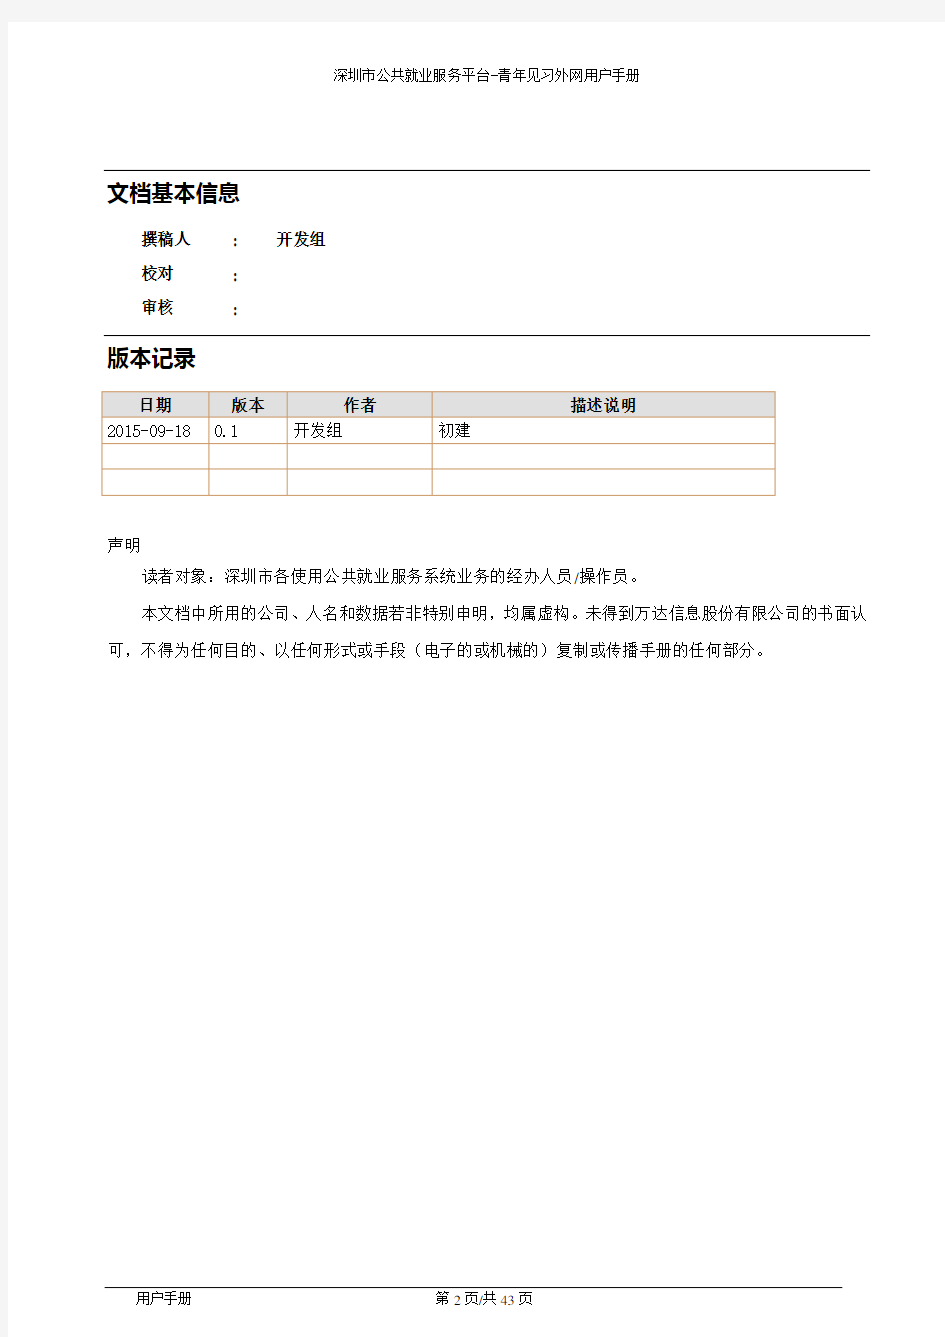 深圳公共就业服务平台青年见习用户手册解析